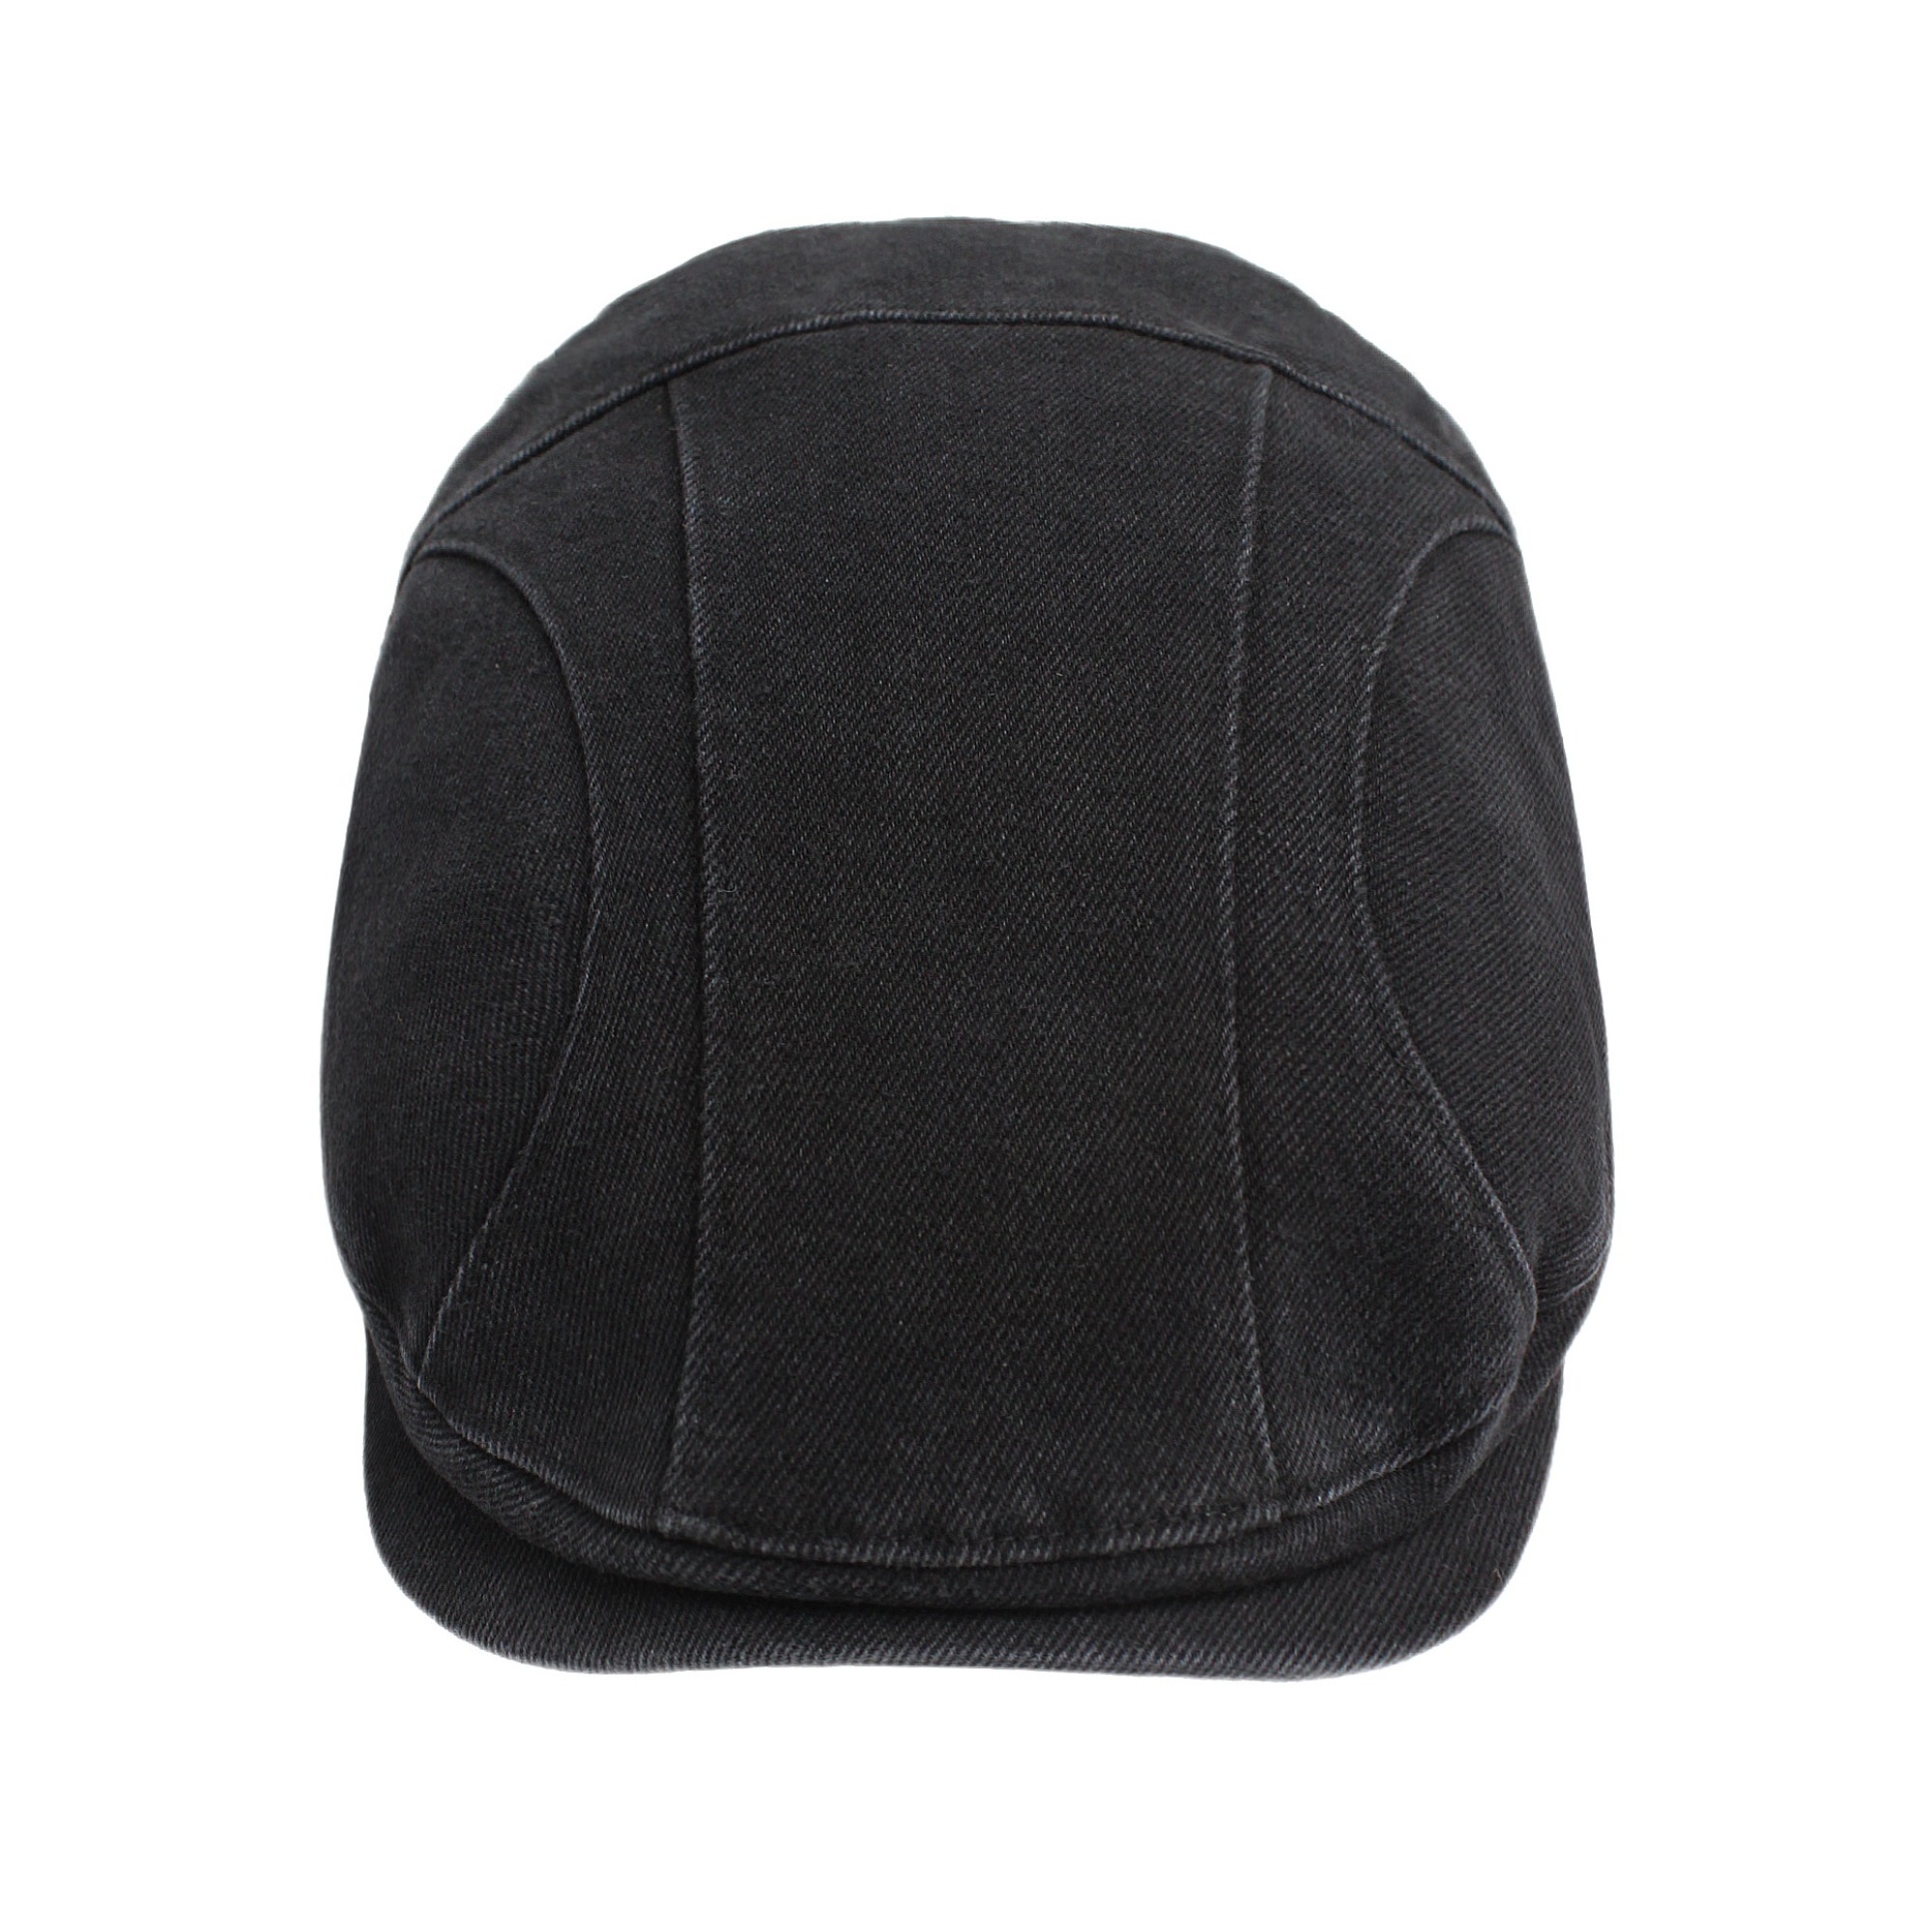 Hunting cap (Black)